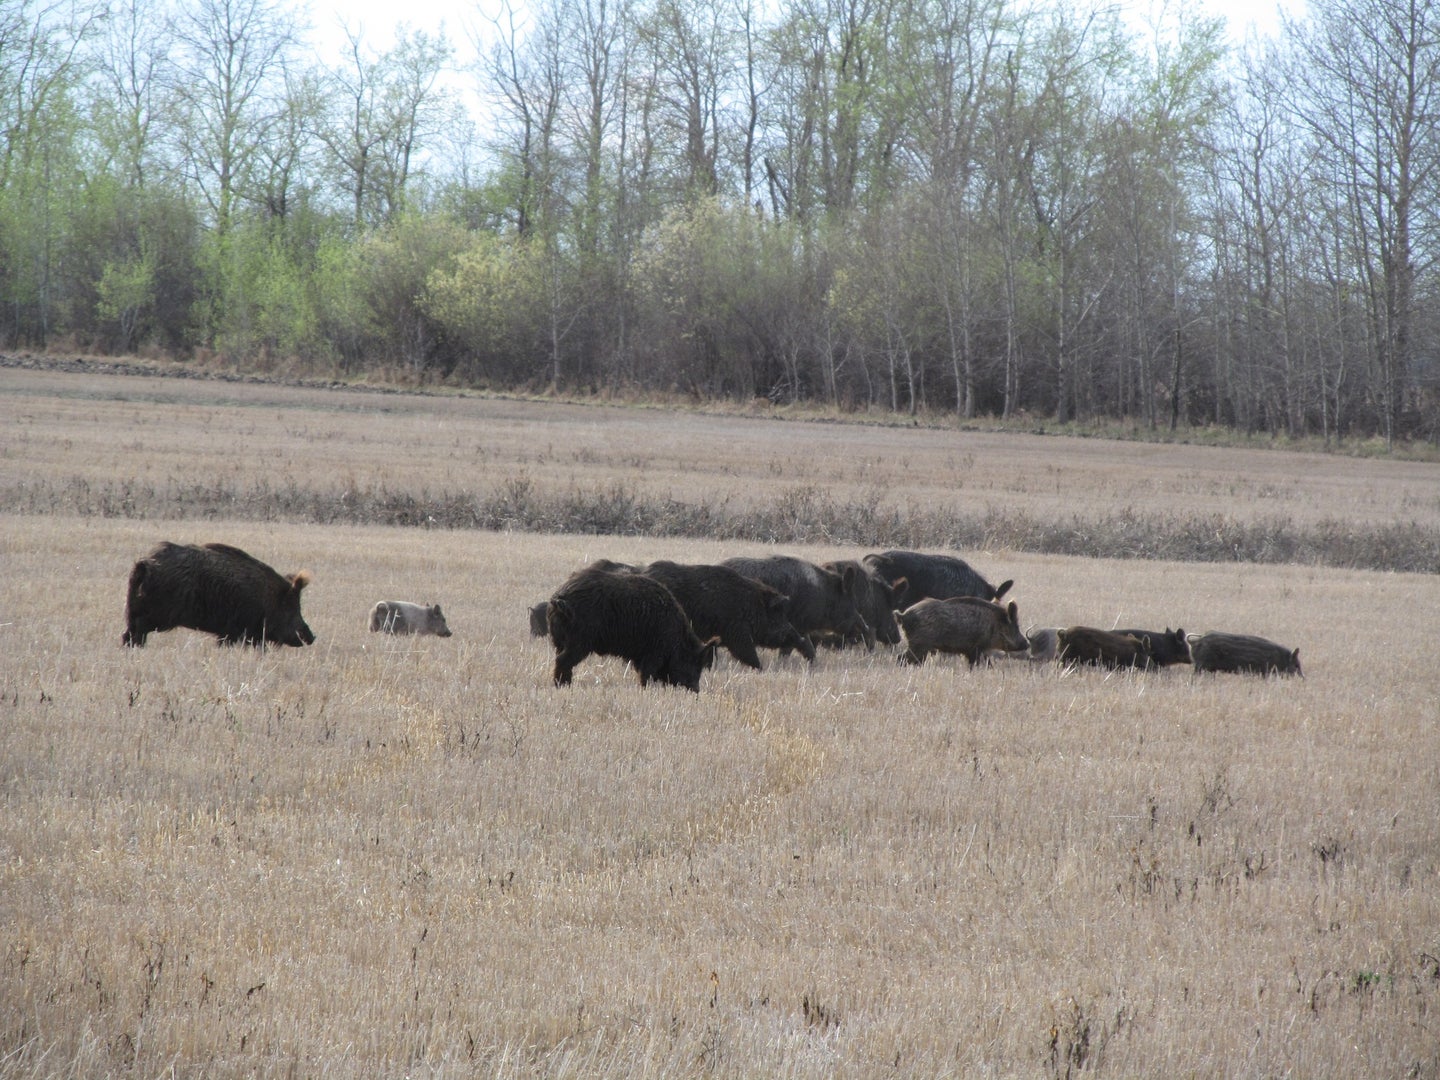 pigs in open field